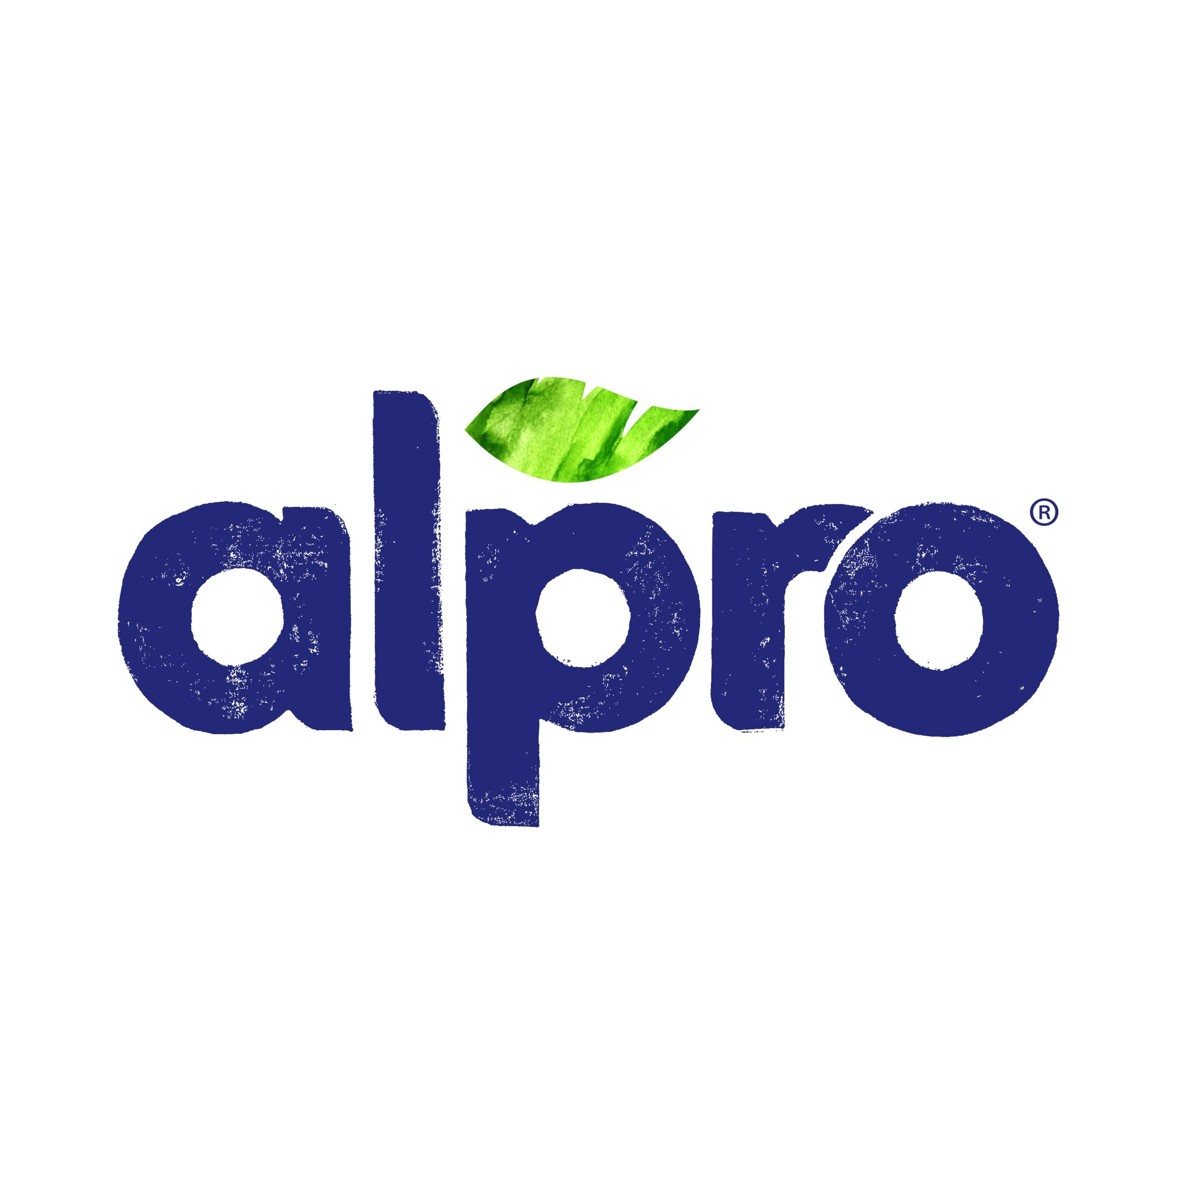 Nesladený rastlinný nápoj Alpro so sójovou príchuťou